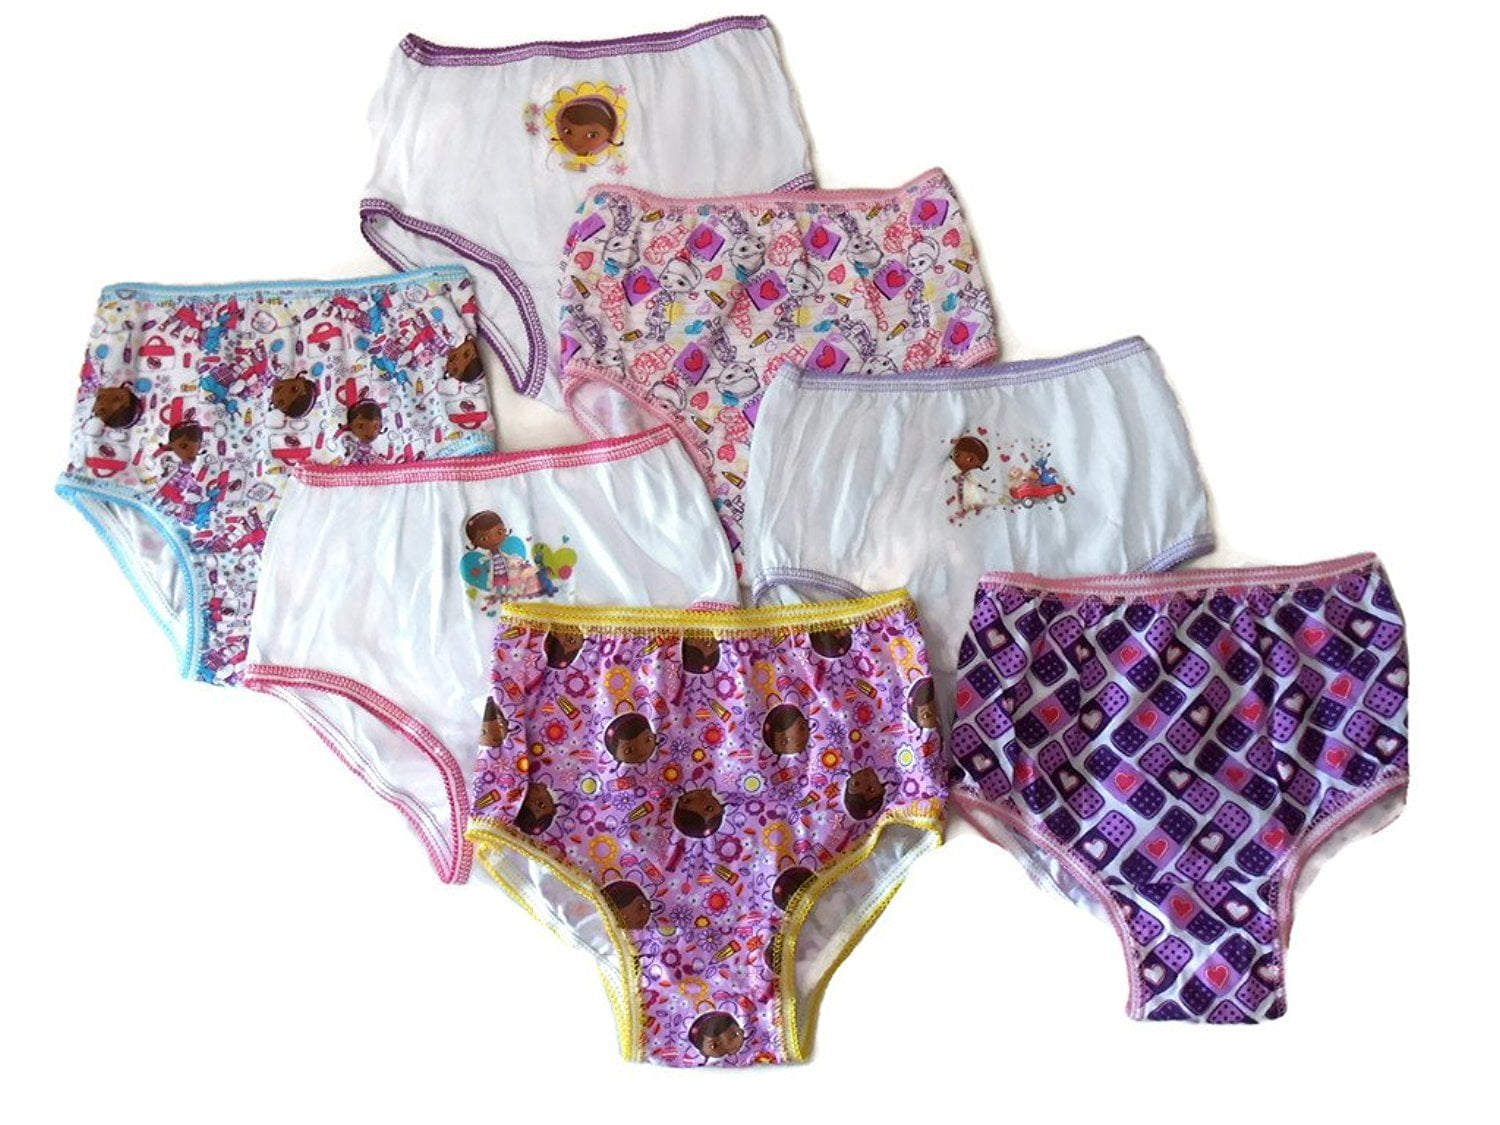  Disney Junior Doc Mcstuffins 7-Pack Girls Panties Underwear  100% Cotton Comfortable (Doc McStuffins, 4): Clothing, Shoes & Jewelry